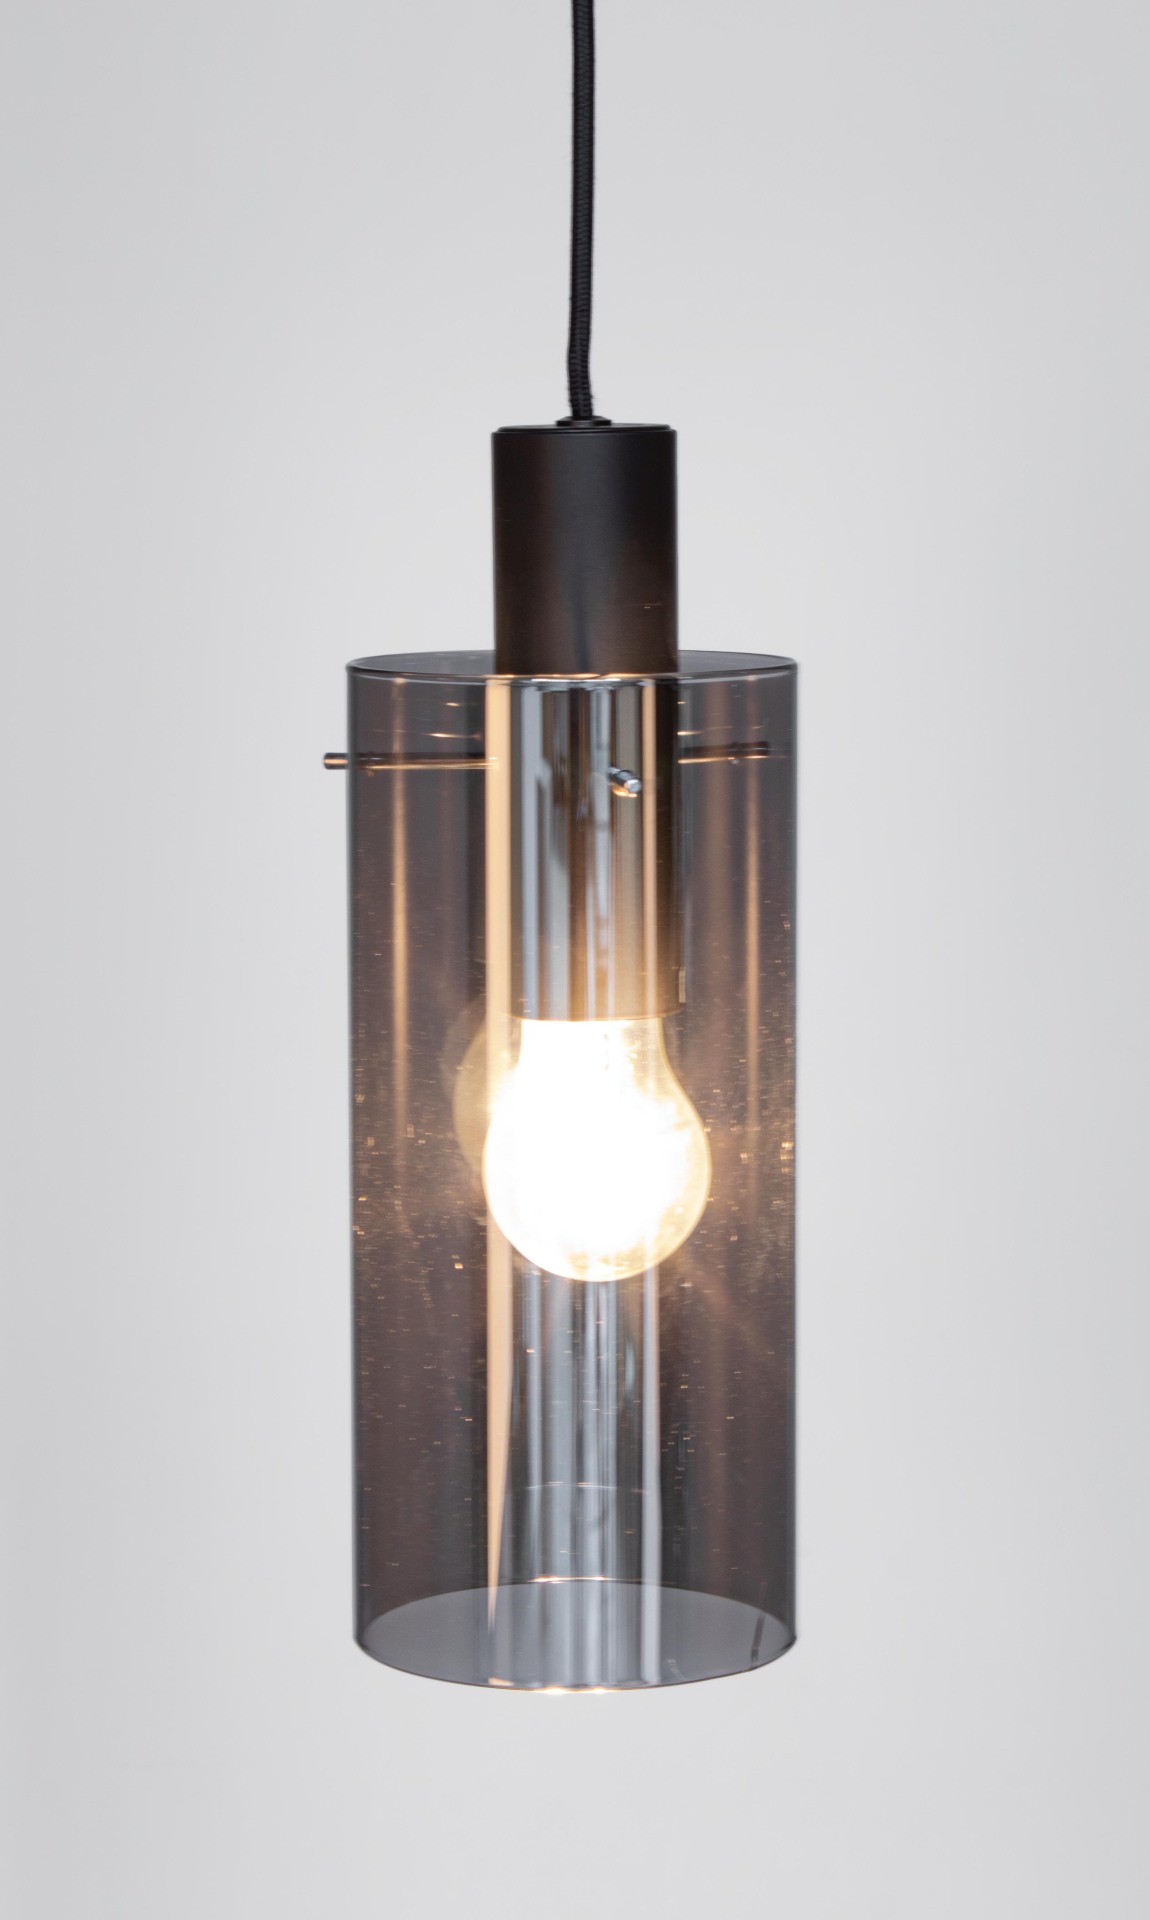 Die Hängeleuchte Aglow überzeugt mit ihrem modernen Design. Gefertigt wurde sie aus Metall, welches einen schwarzen Farbton besitzt. Der Lampenschirm ist aus Glas und ist abgedunkelt. Die Lampe besitzt eine Höhe von 130 cm.